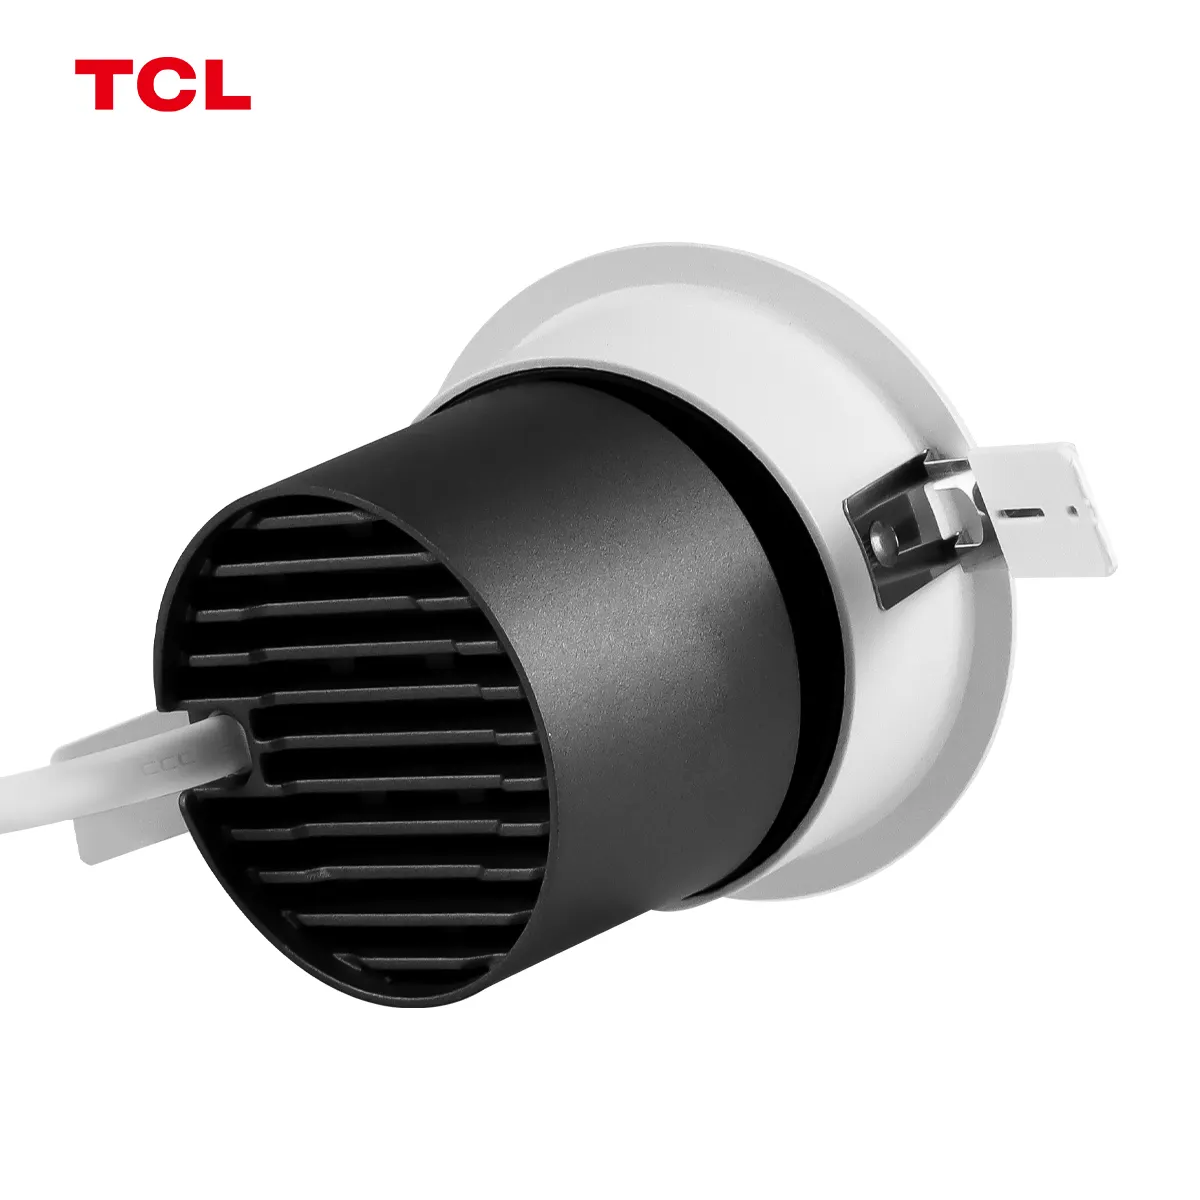 TCL 9W cri90 luci spot antiglare incasso in alluminio nero per illuminazione domestica spotlight da salotto